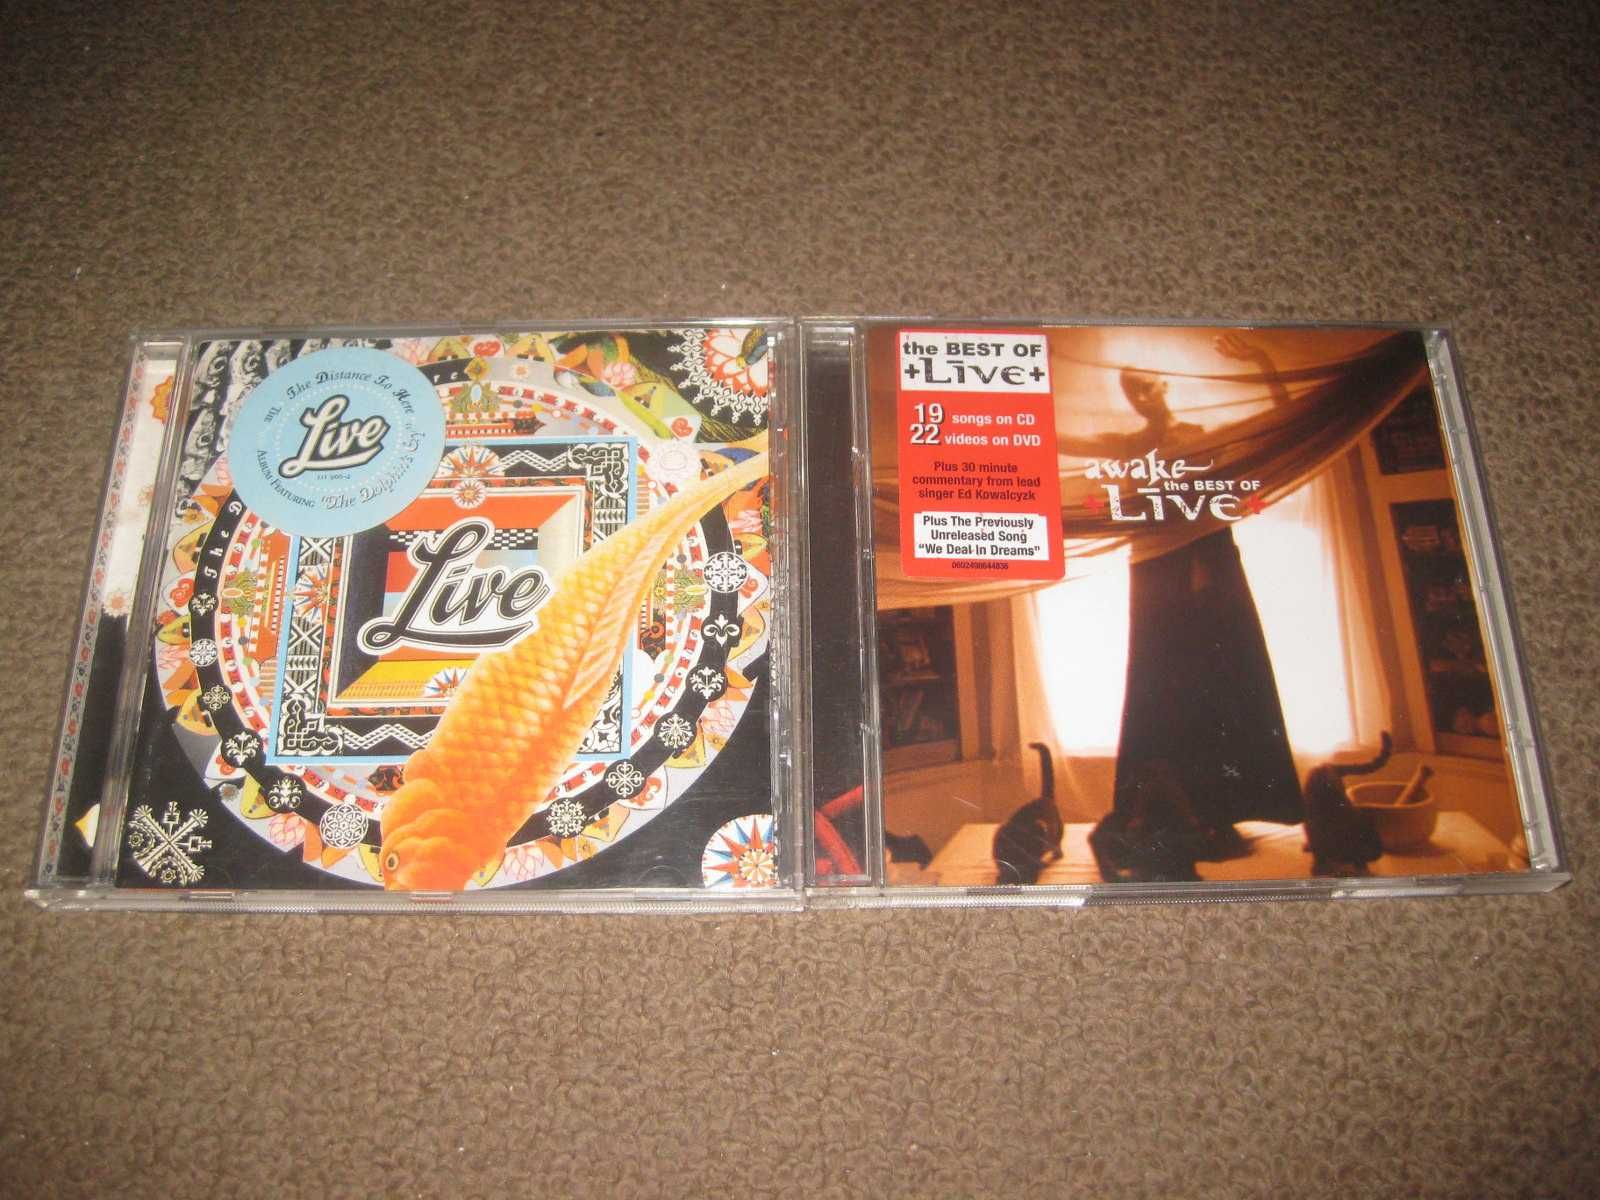 2 CDs dos "Live" Portes Grátis!